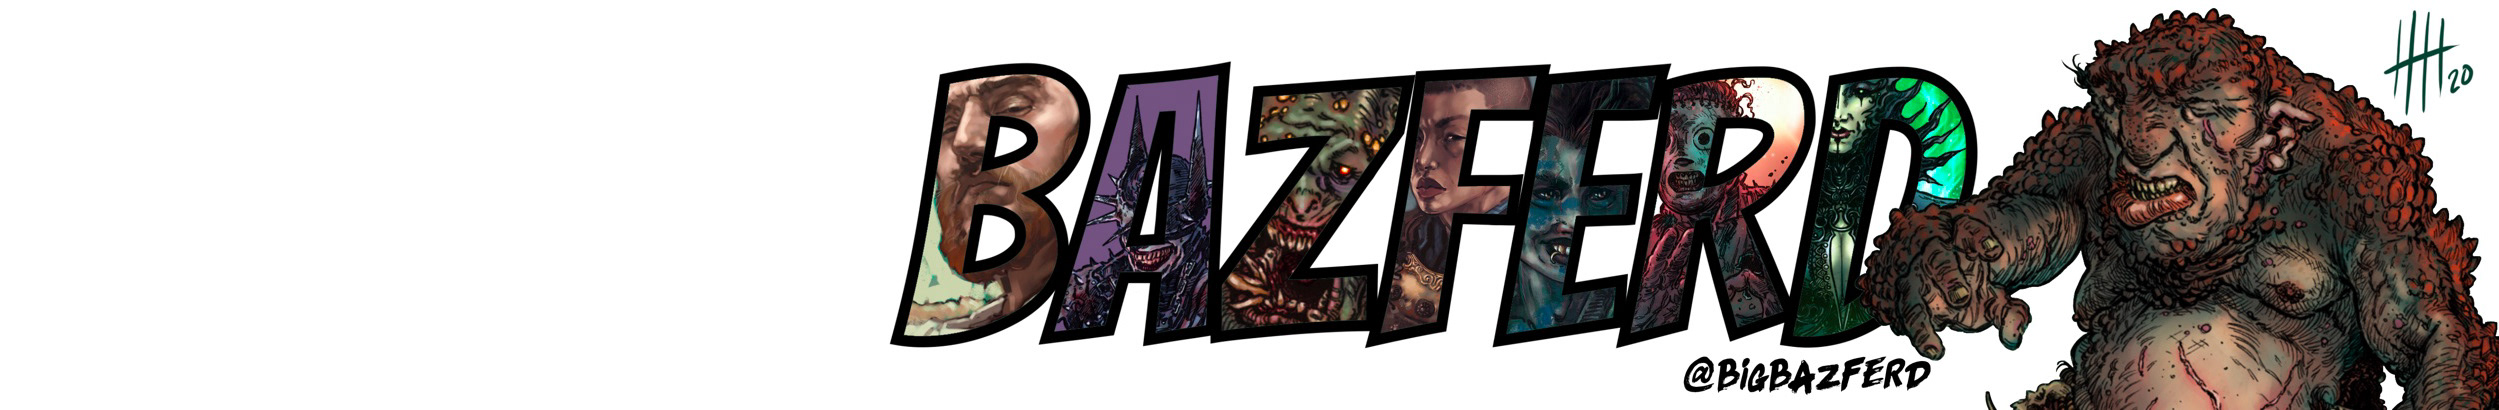 Bazferd ...'s profile banner